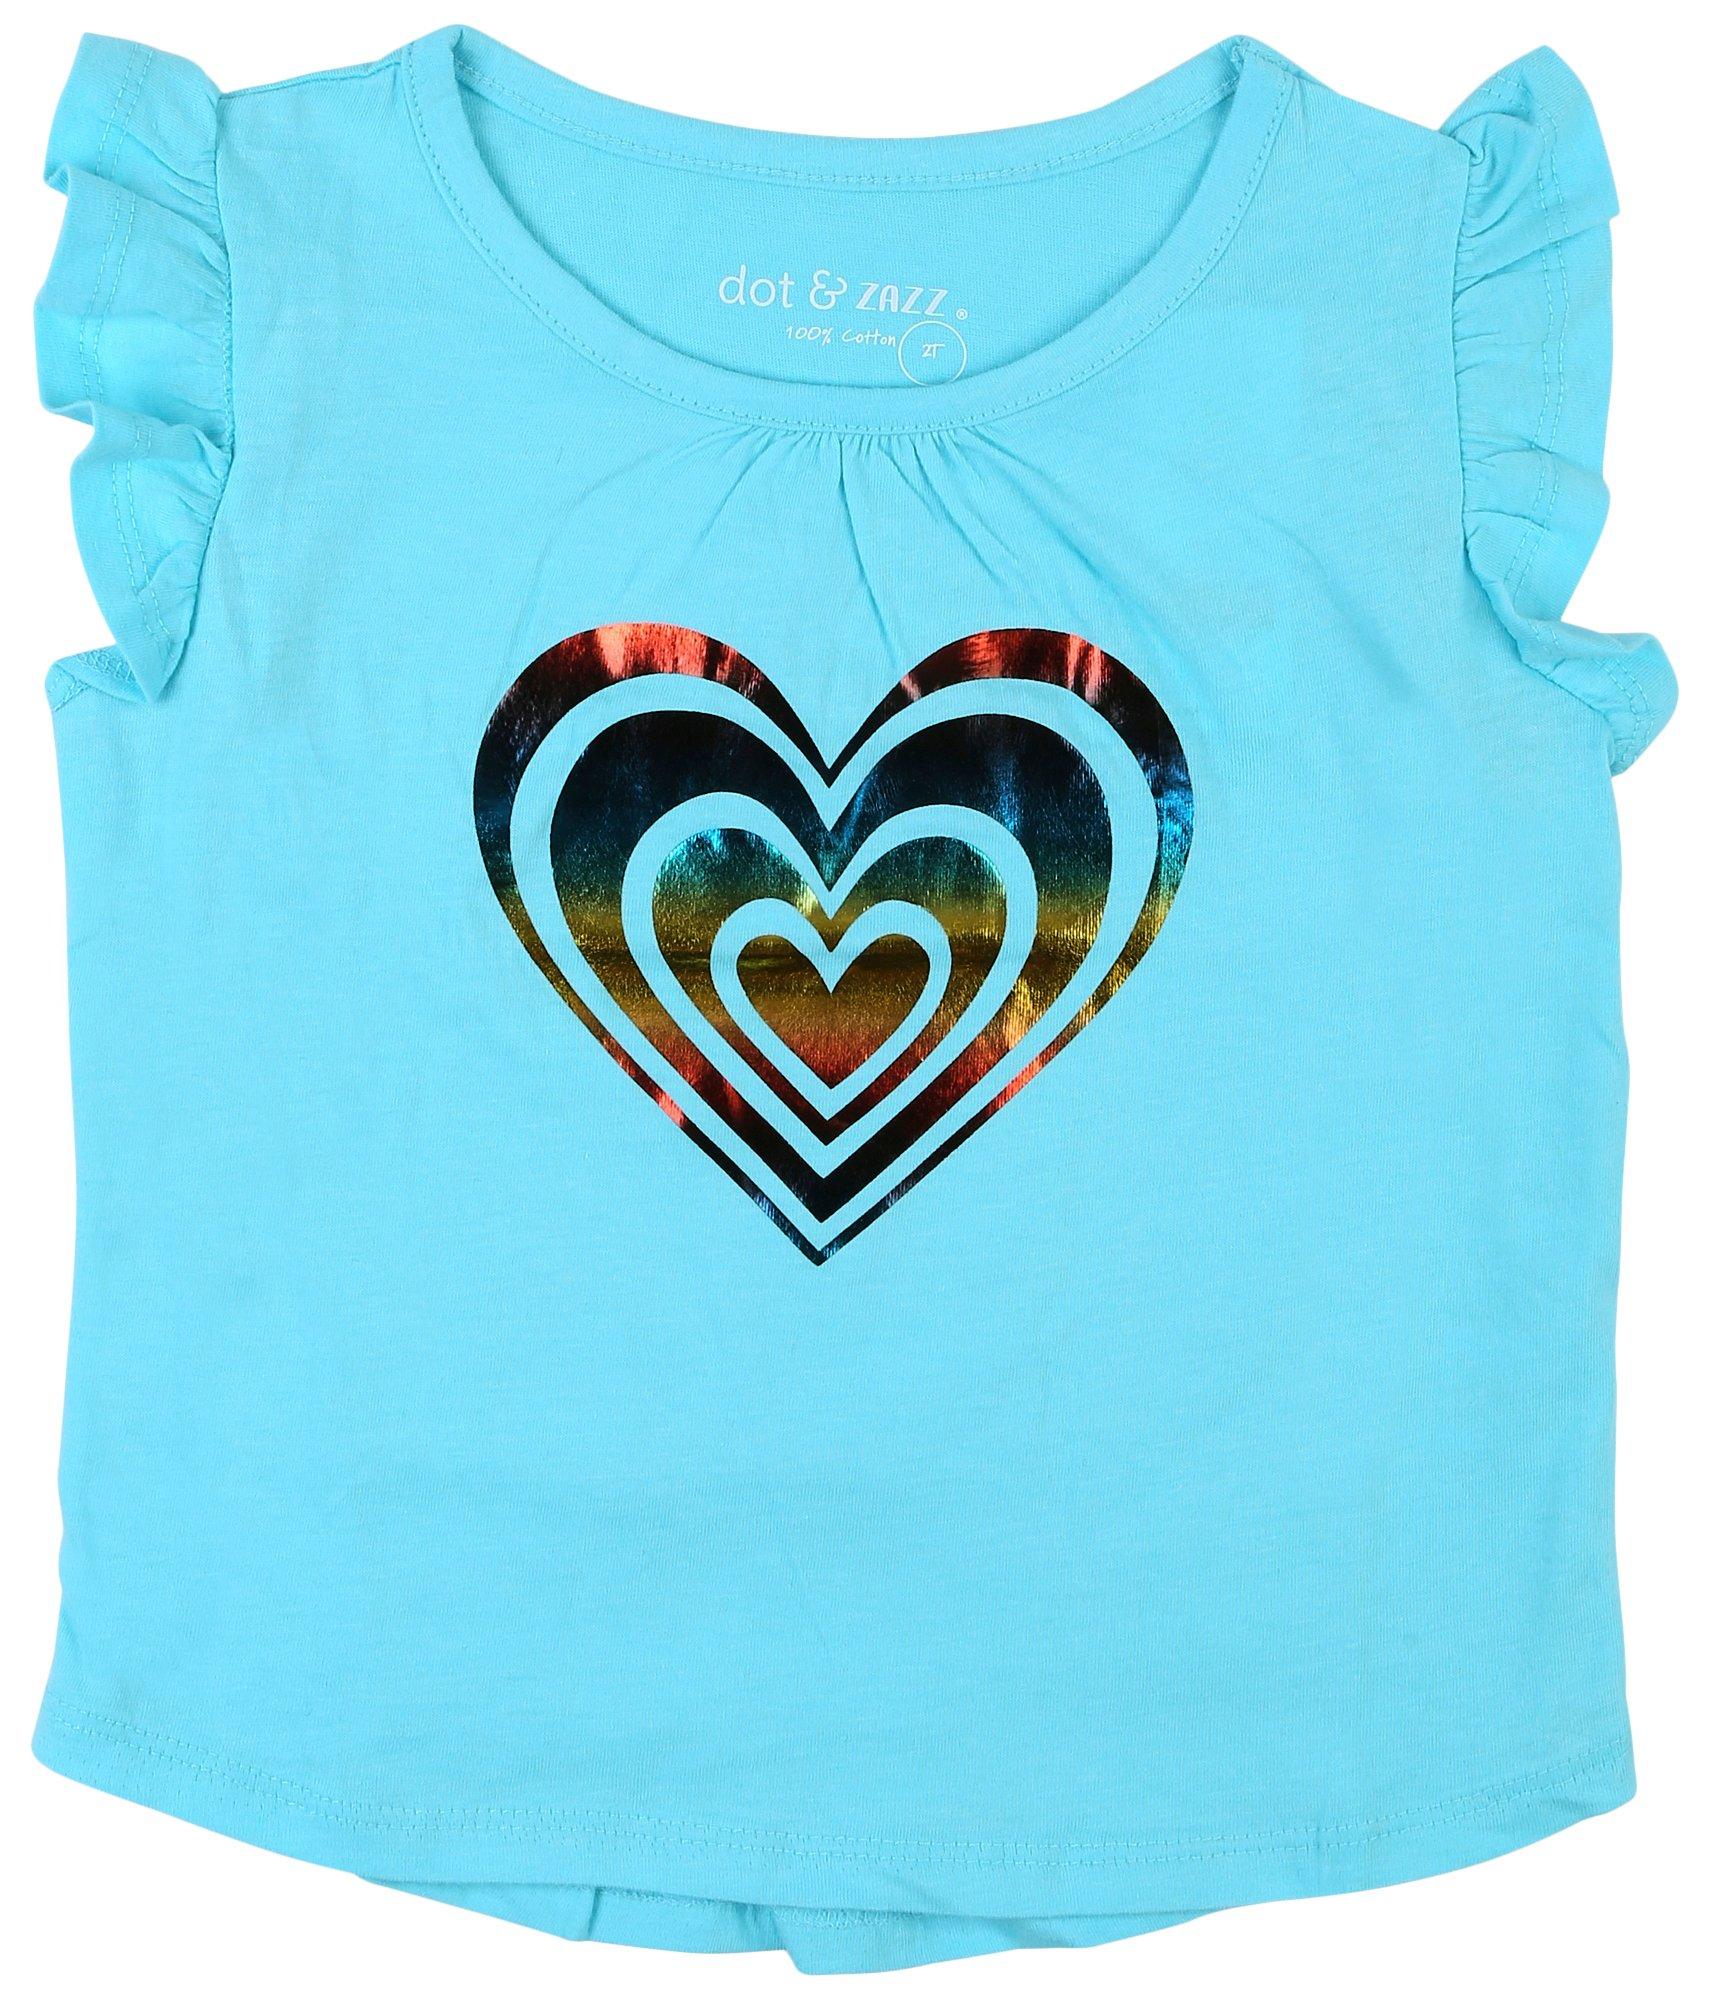 DOT & ZAZZ Baby Girls Tinsel Heart Flutter Sleeve T-Shirt